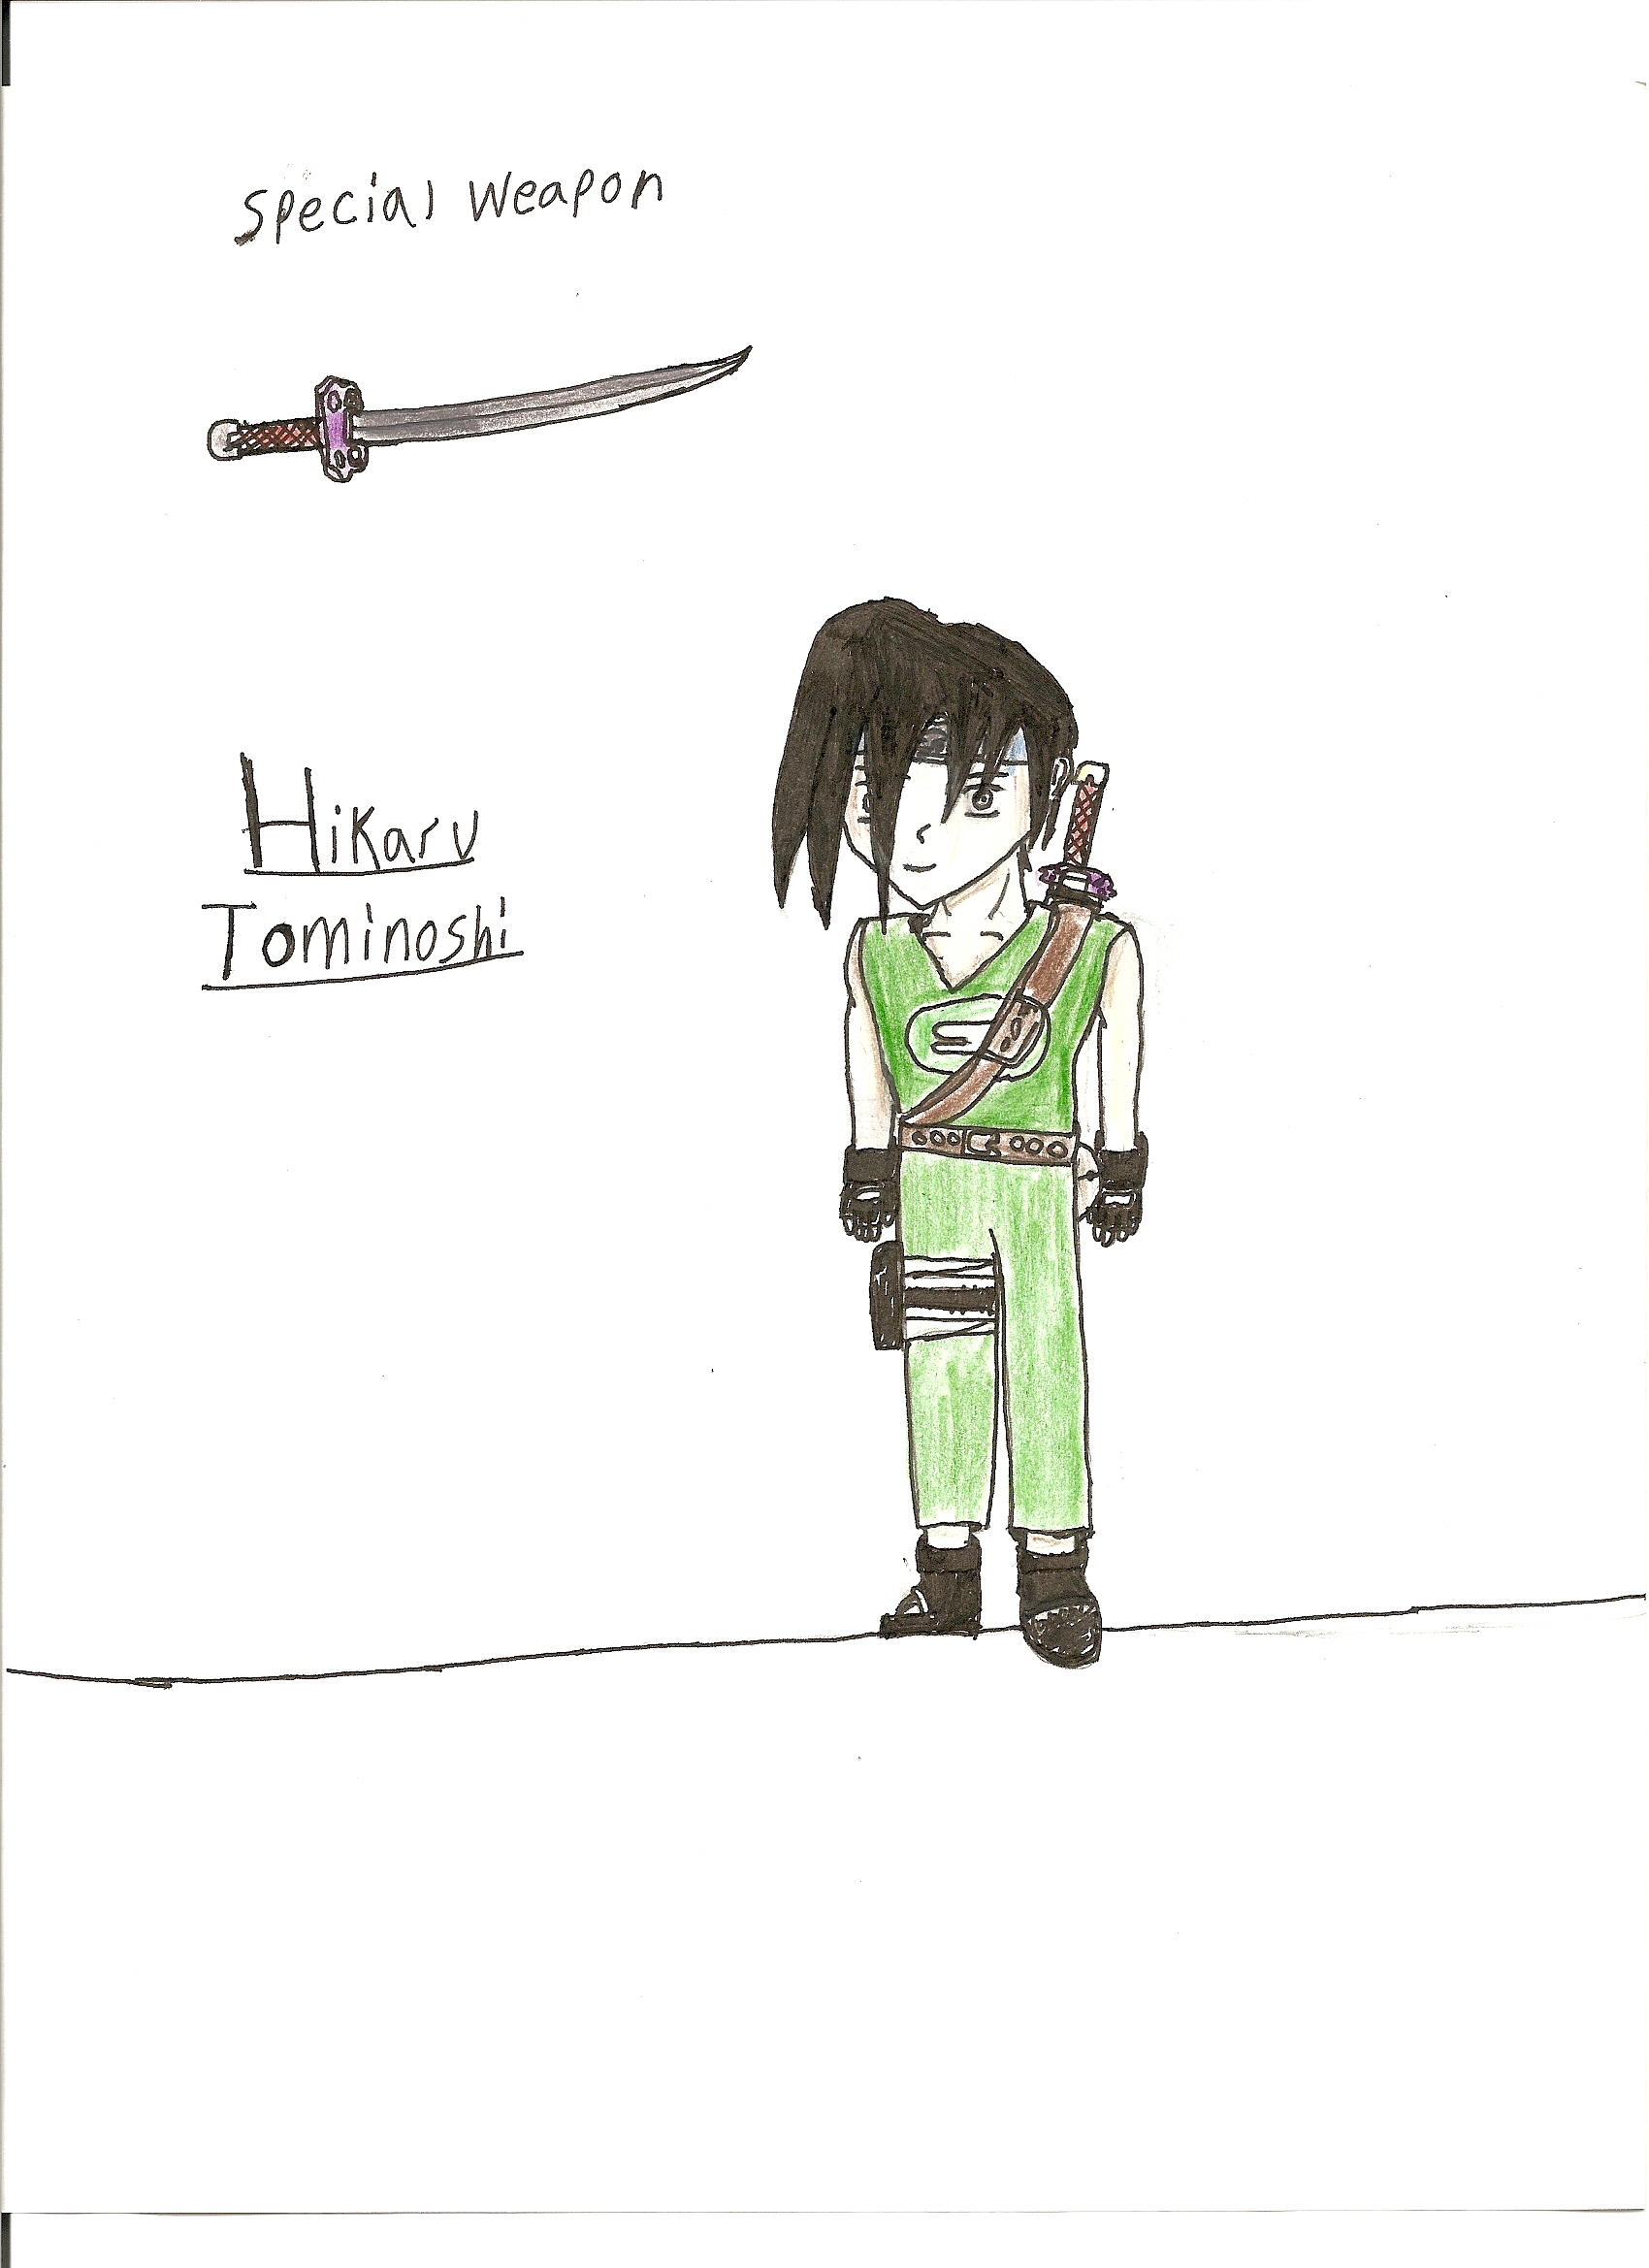 My OC Character Hikaru Tominoshi by Yugioh9000